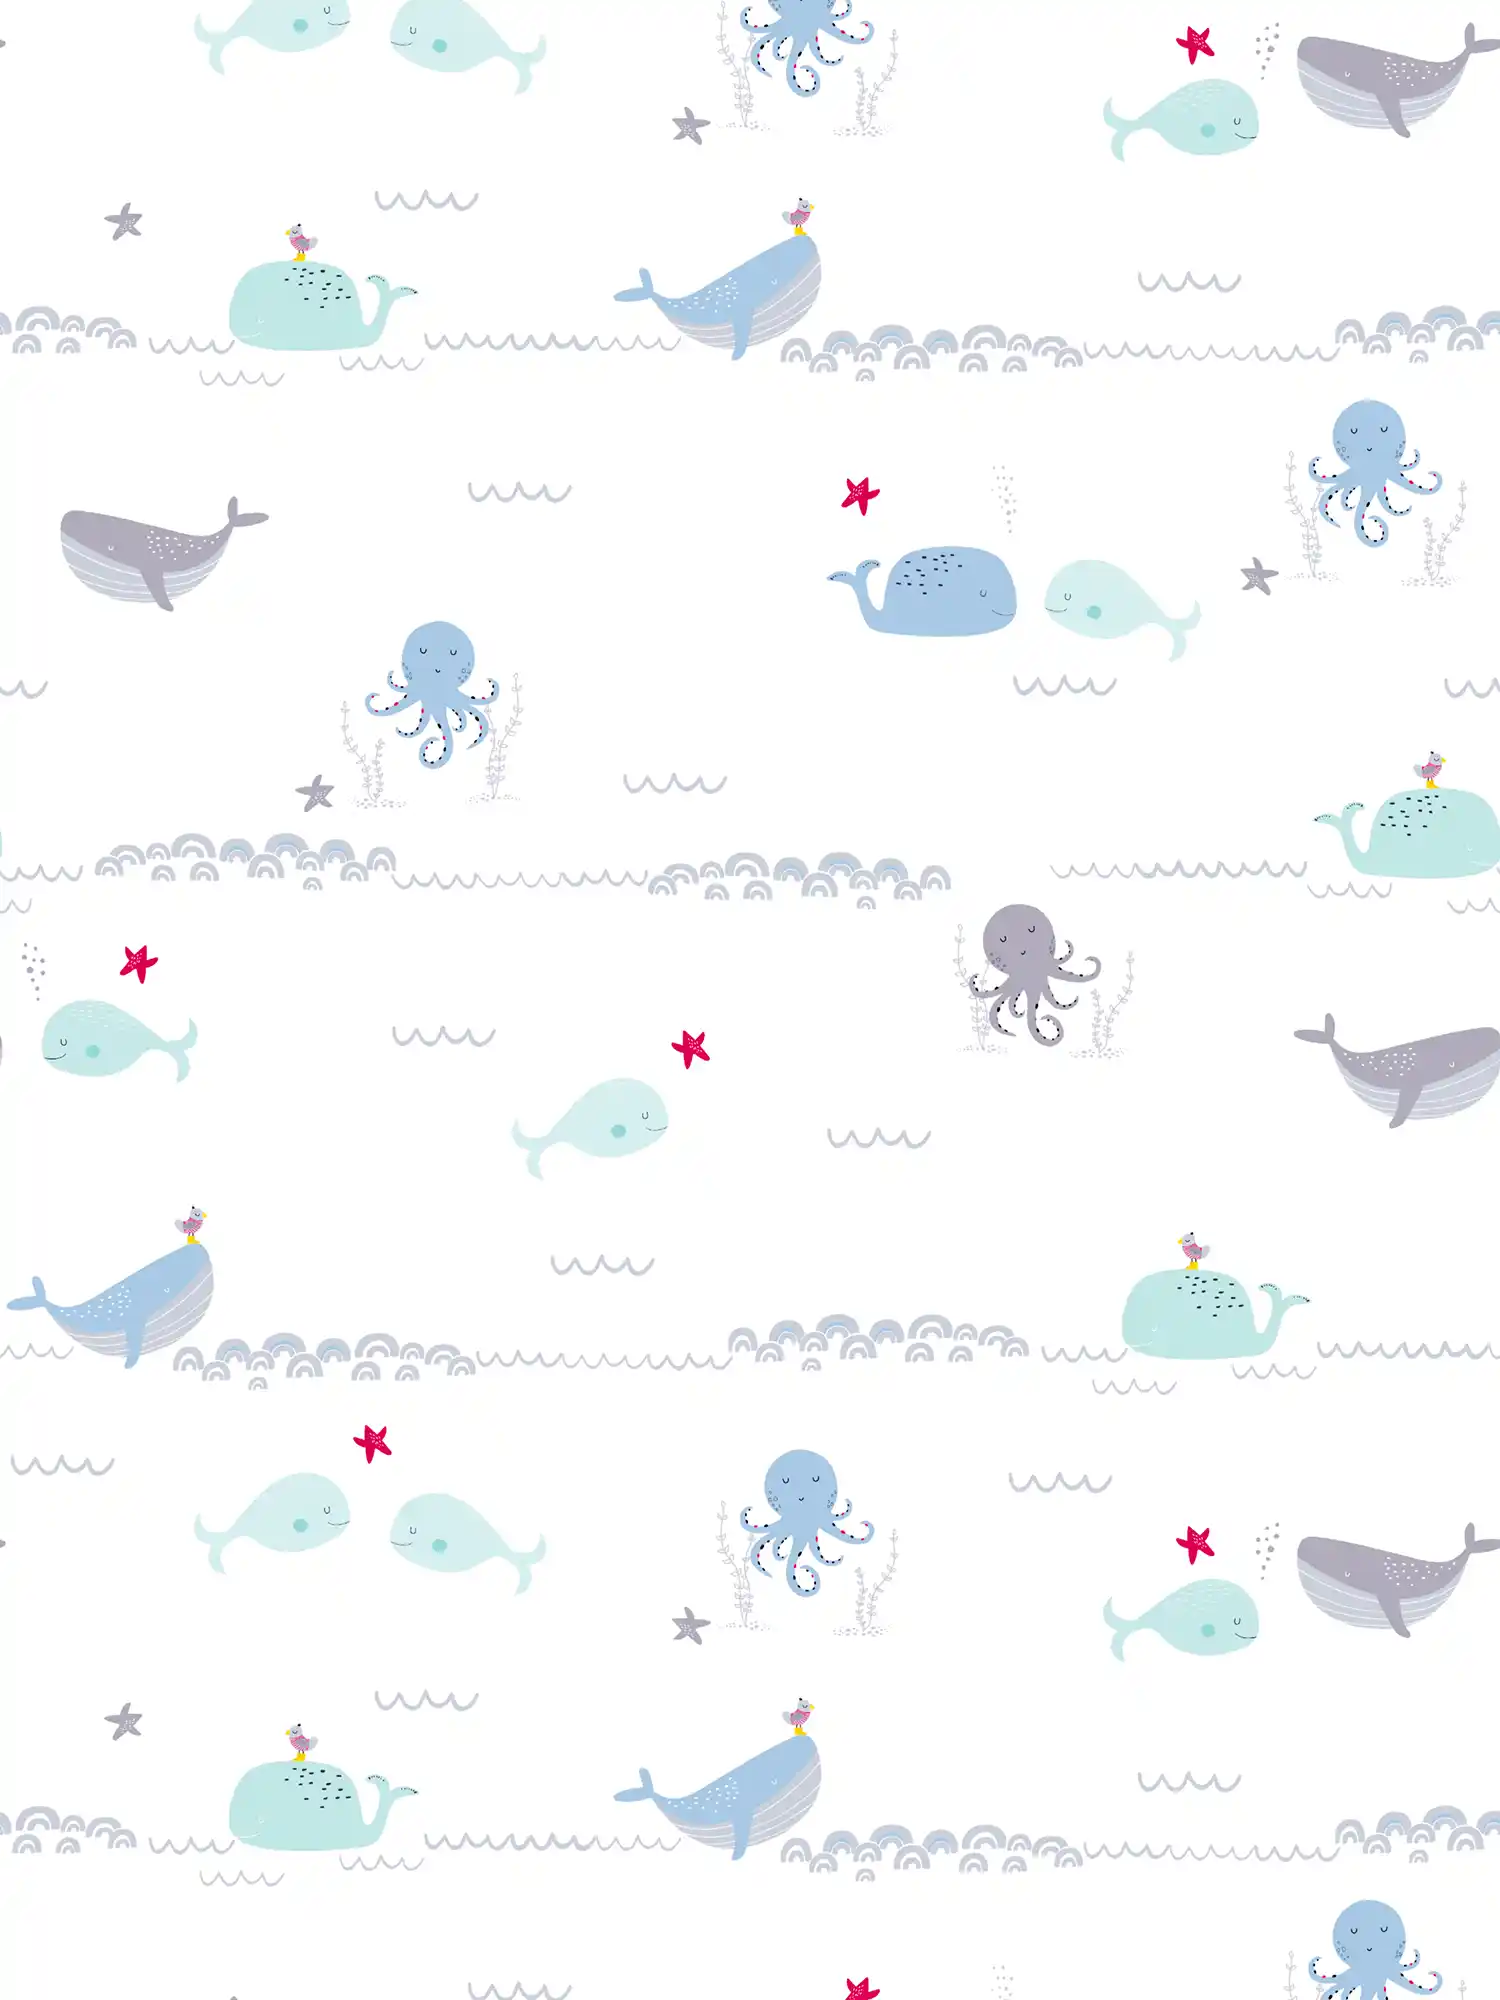 Kinderkamer behang zeedieren - blauw, grijs, wit
